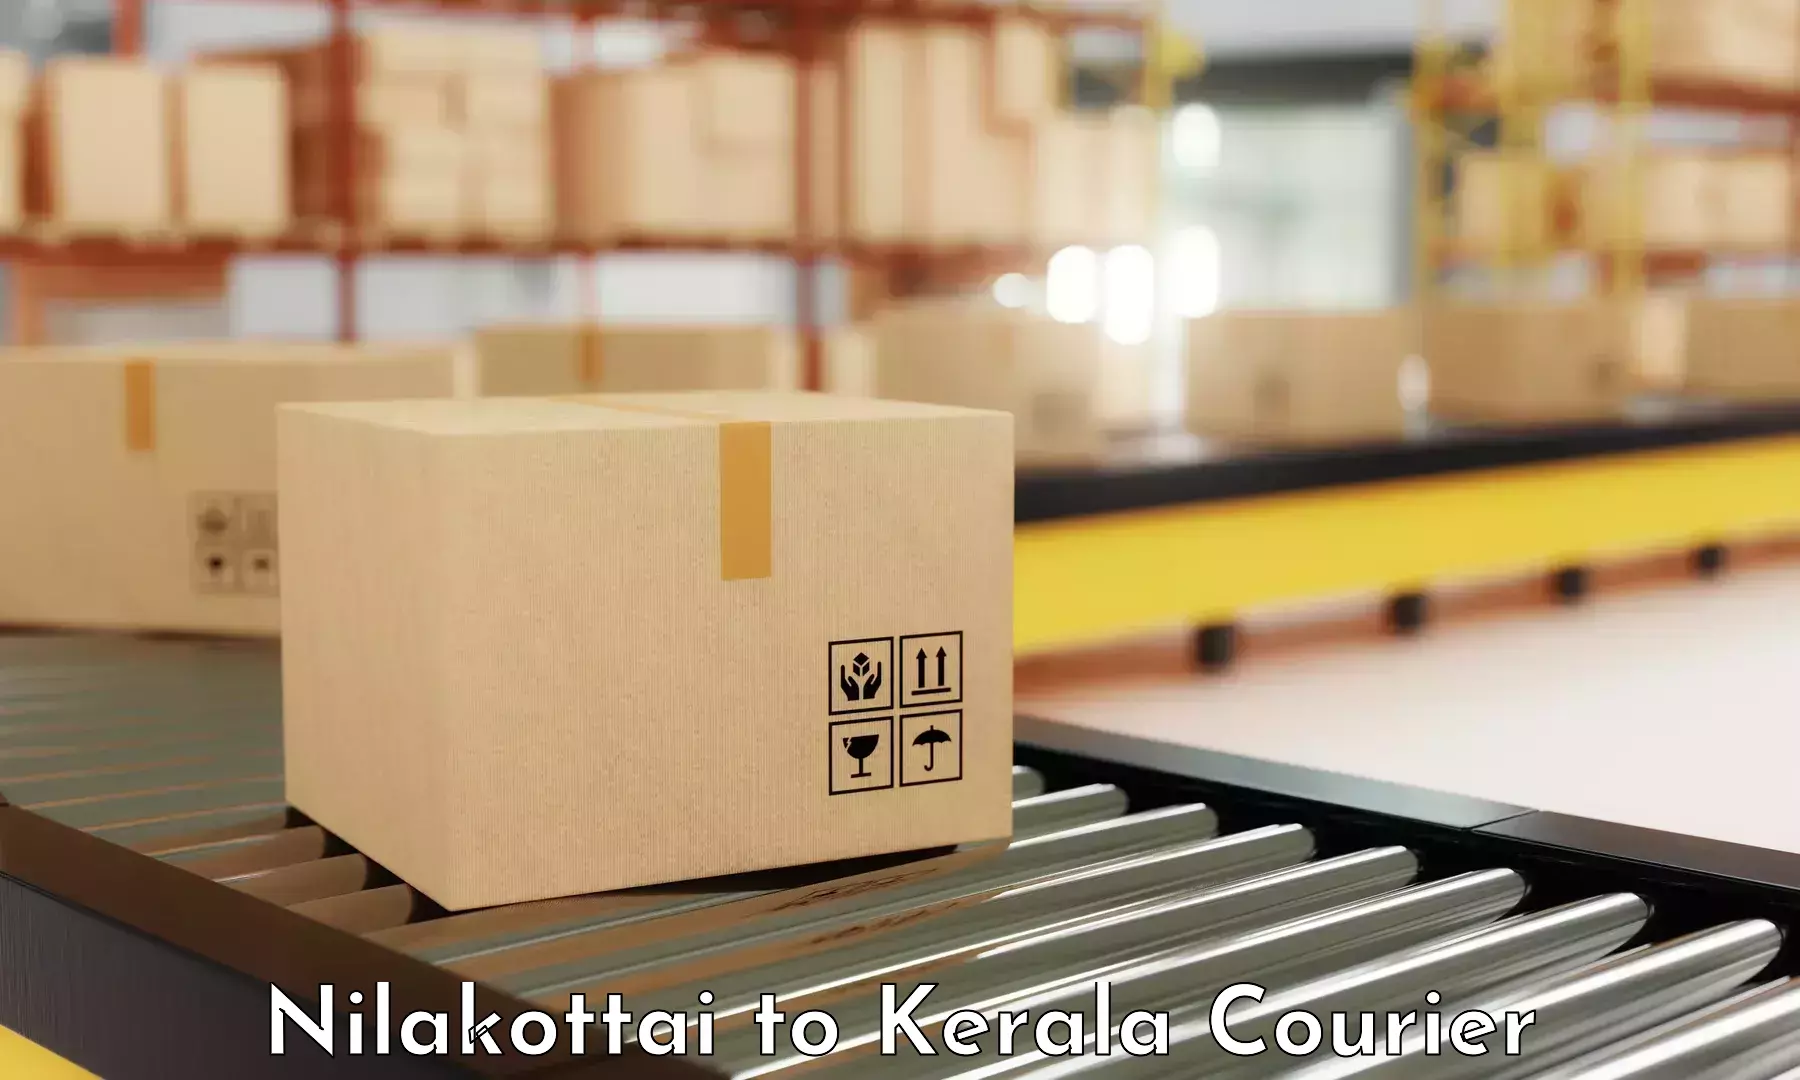 Rapid freight solutions Nilakottai to Kochi